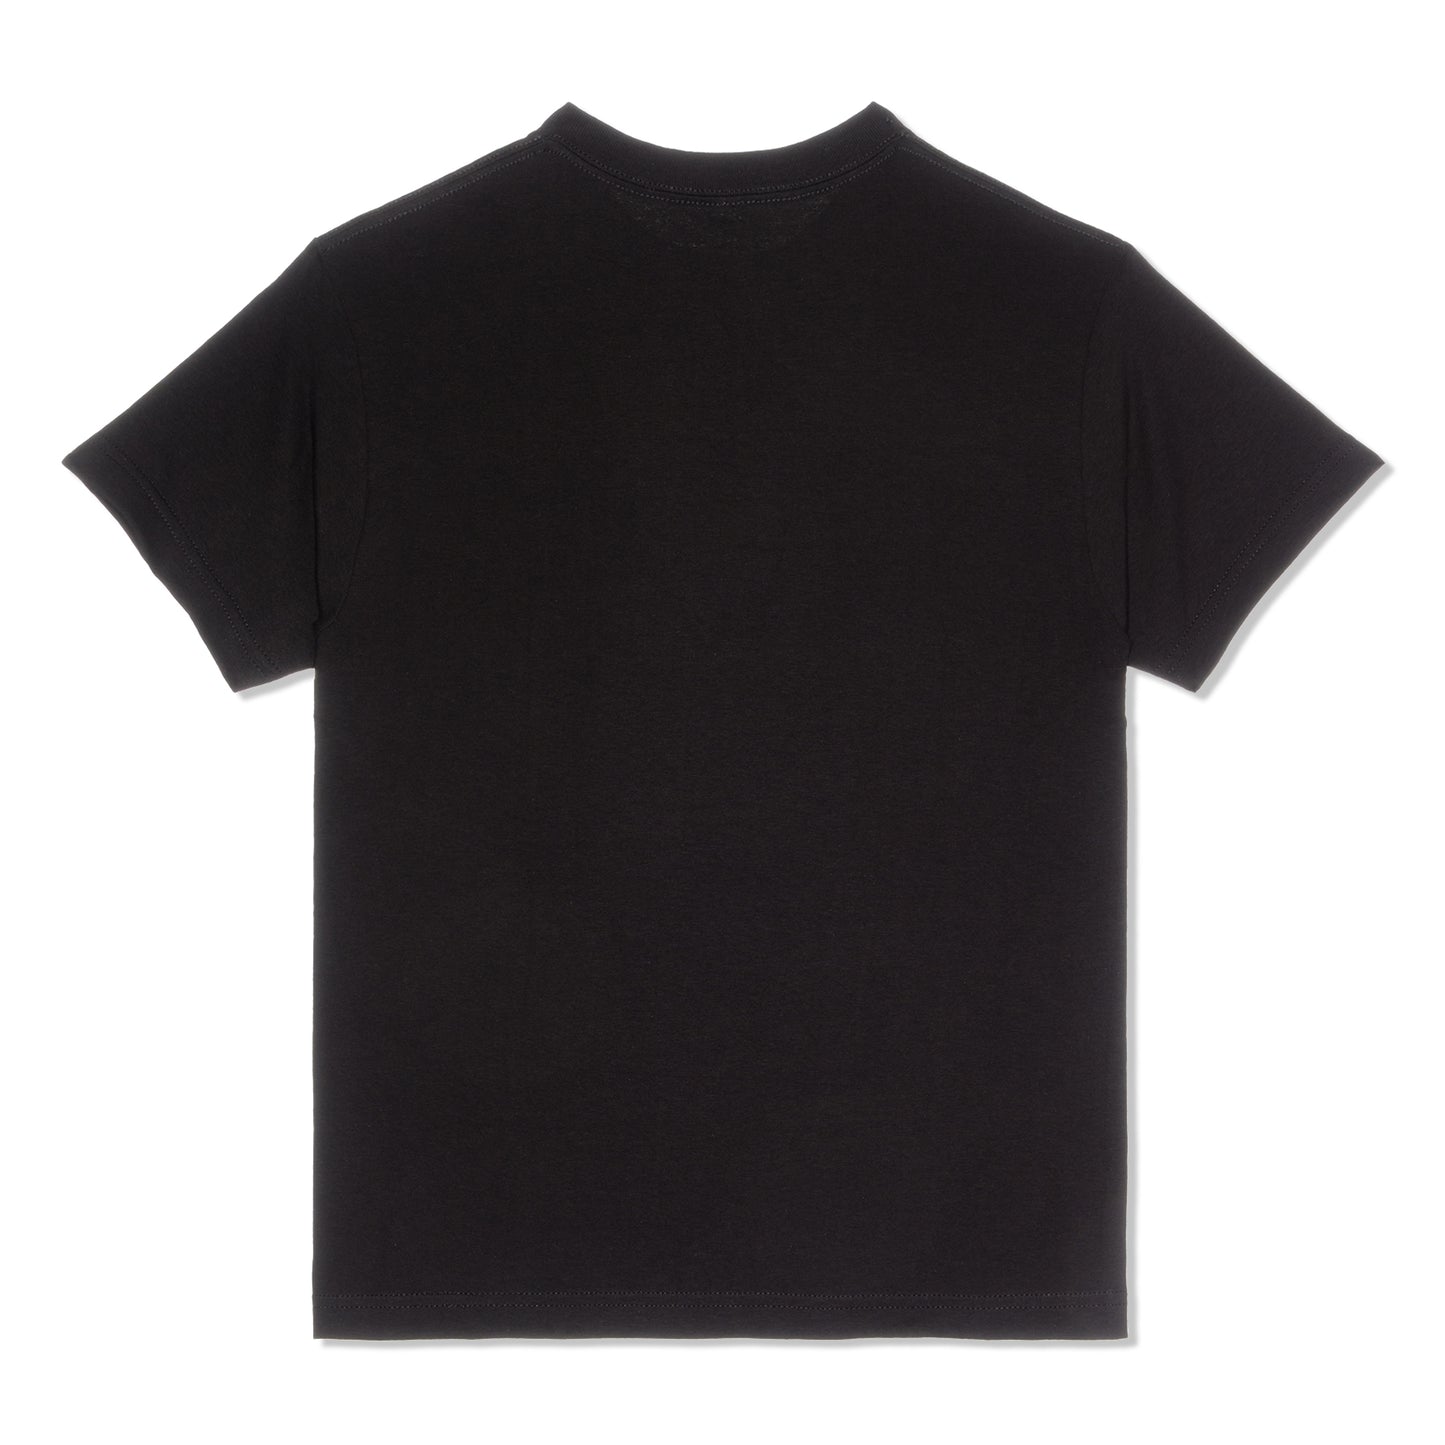 Pleasures Don't care T-Shirt (Black)